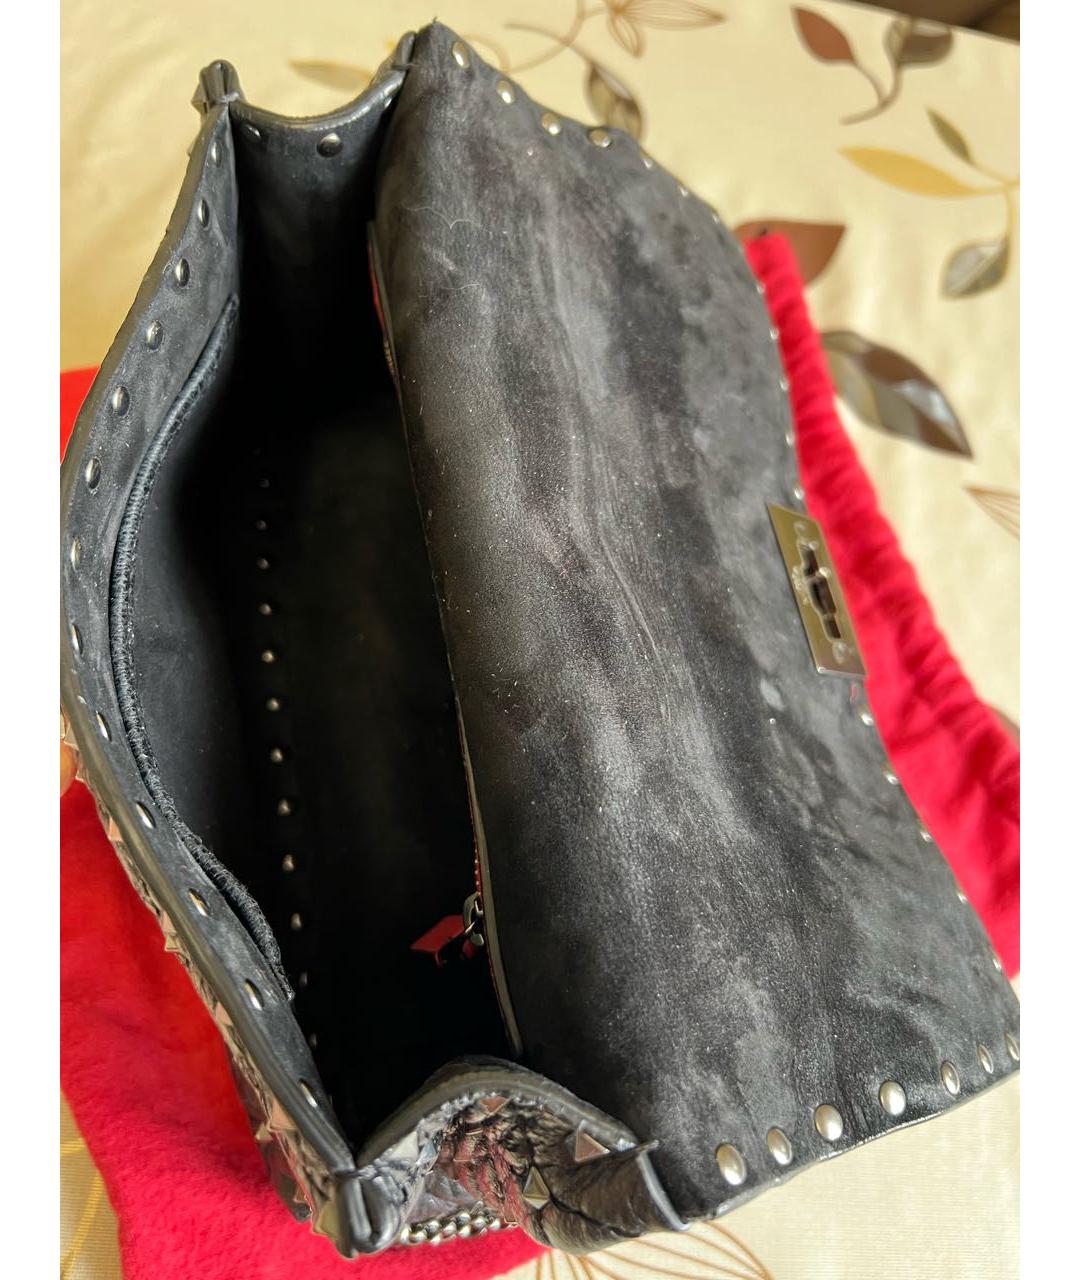 VALENTINO Черная кожаная сумка через плечо, фото 4